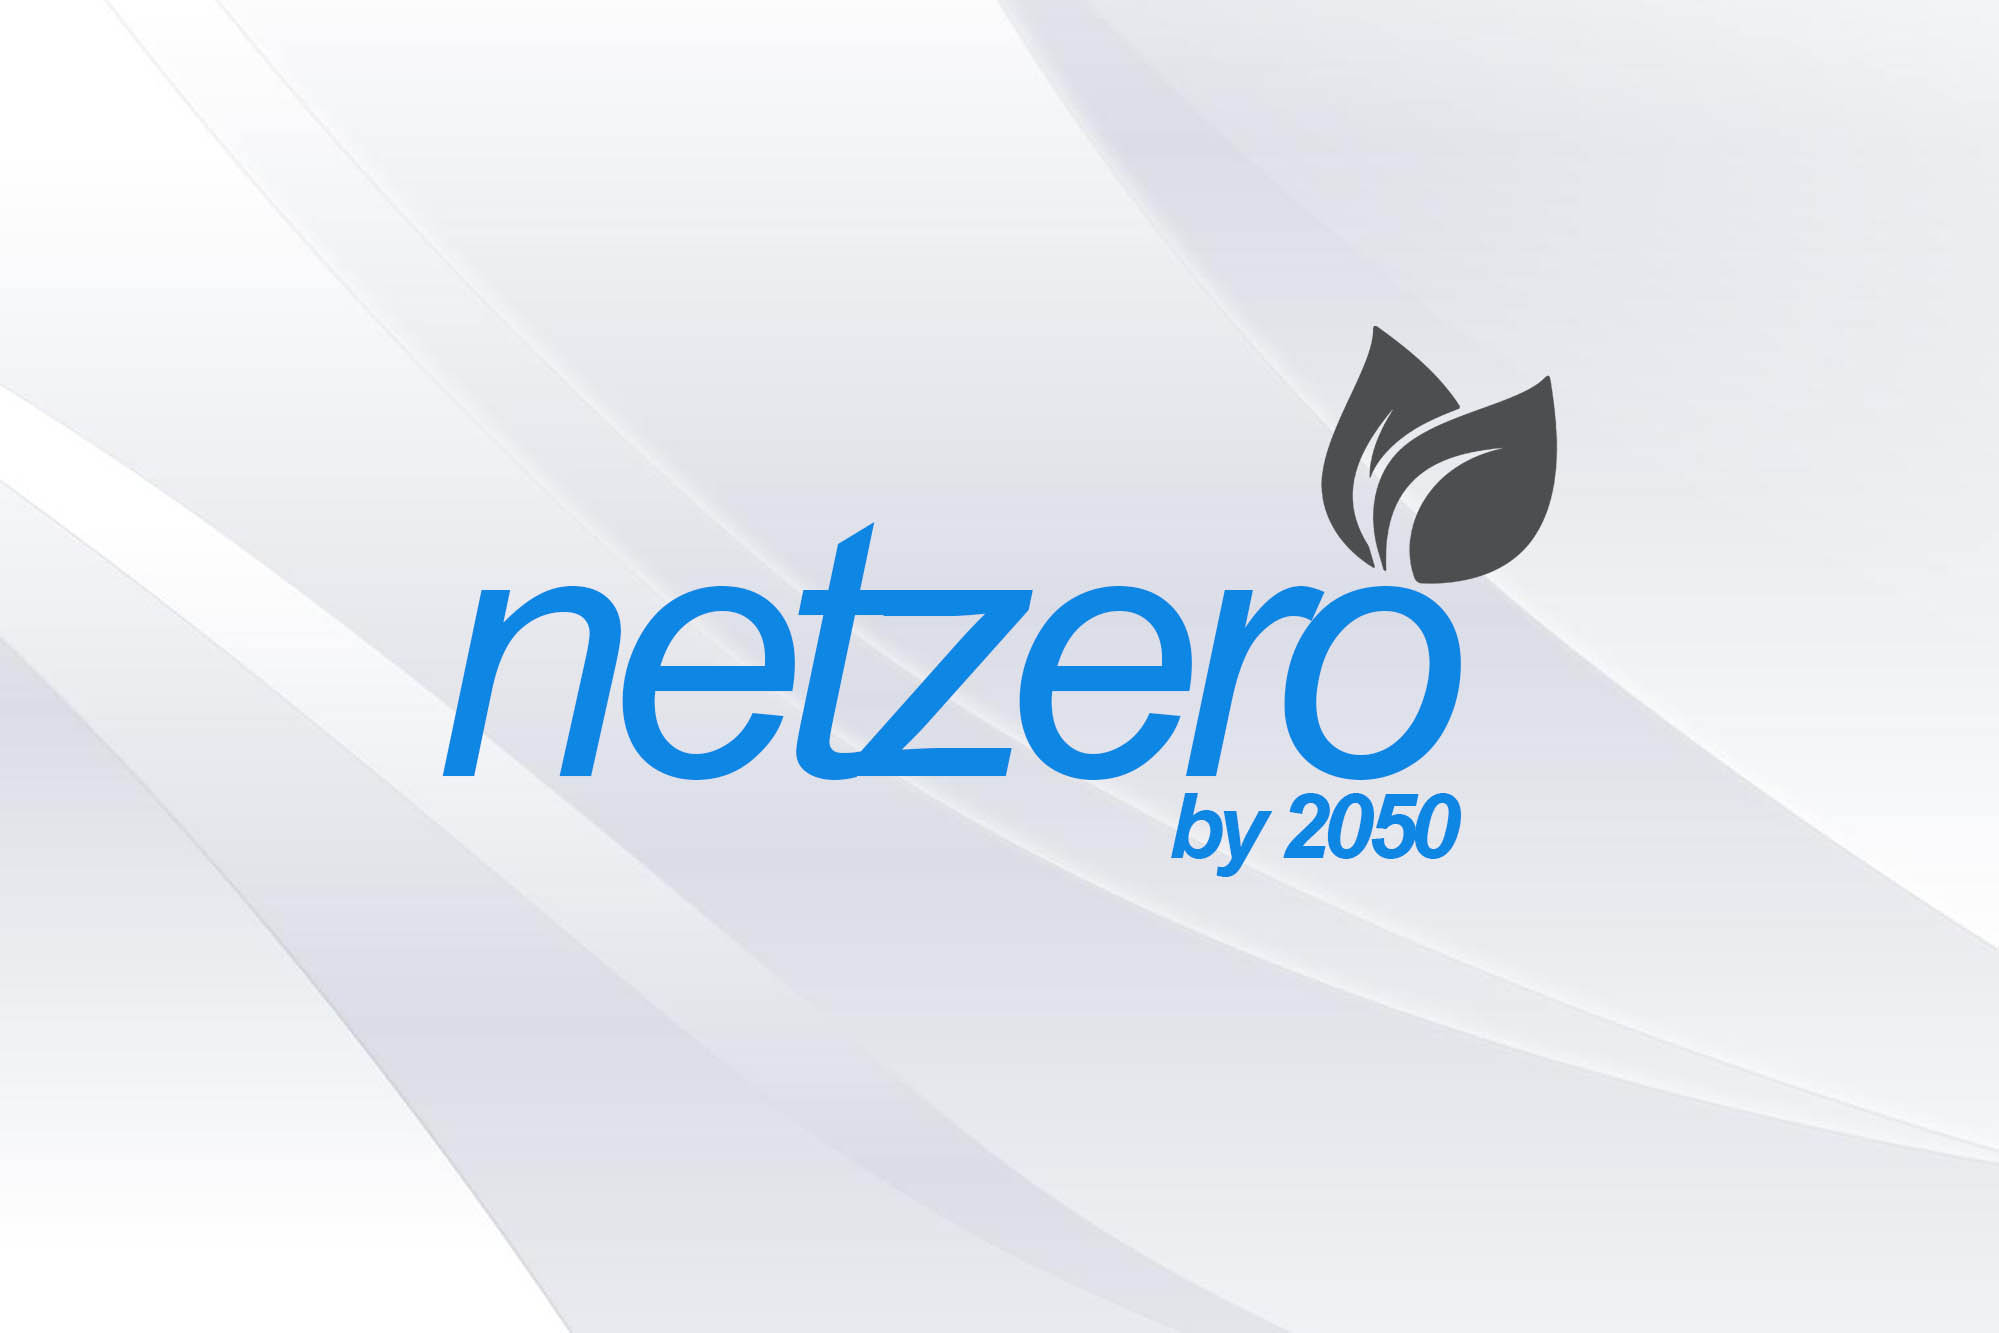 Net zero by 2050